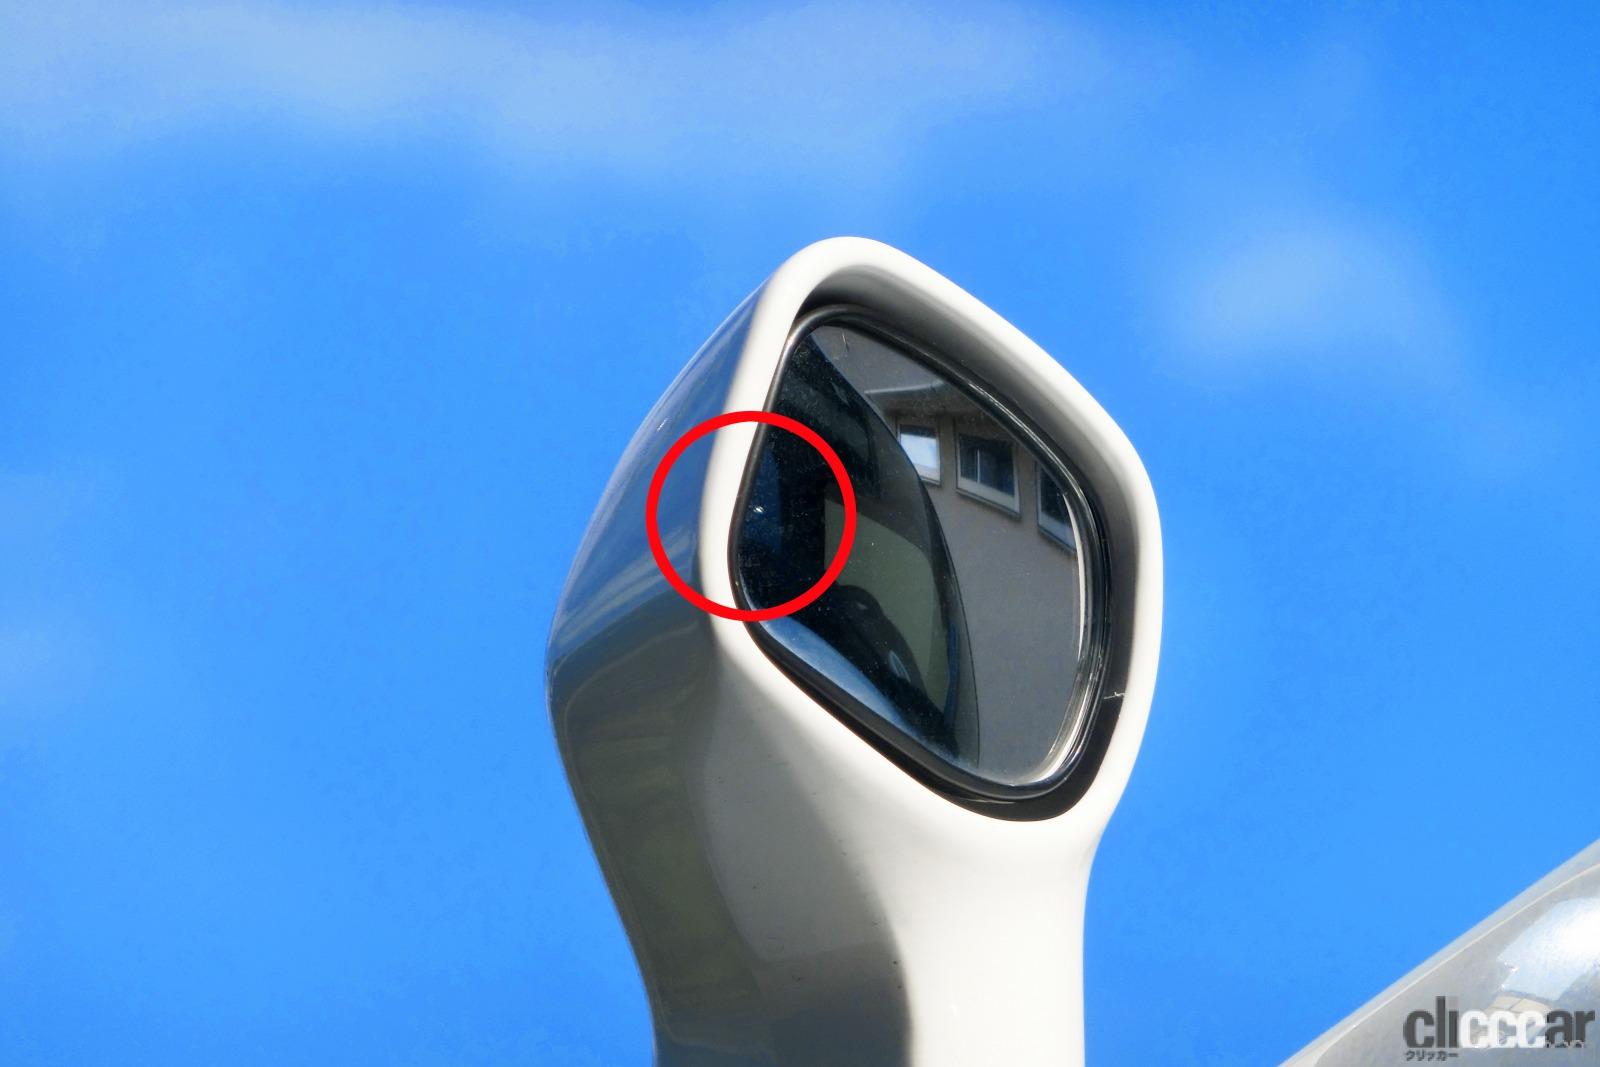 Compact Digital Camera Photo 画像 Suv車種などのサイドアンダーミラーはなぜ必要 付いてる意味 鏡に映る像の見方は 真夏の汗だく実験で探ってみた Clicccar Com